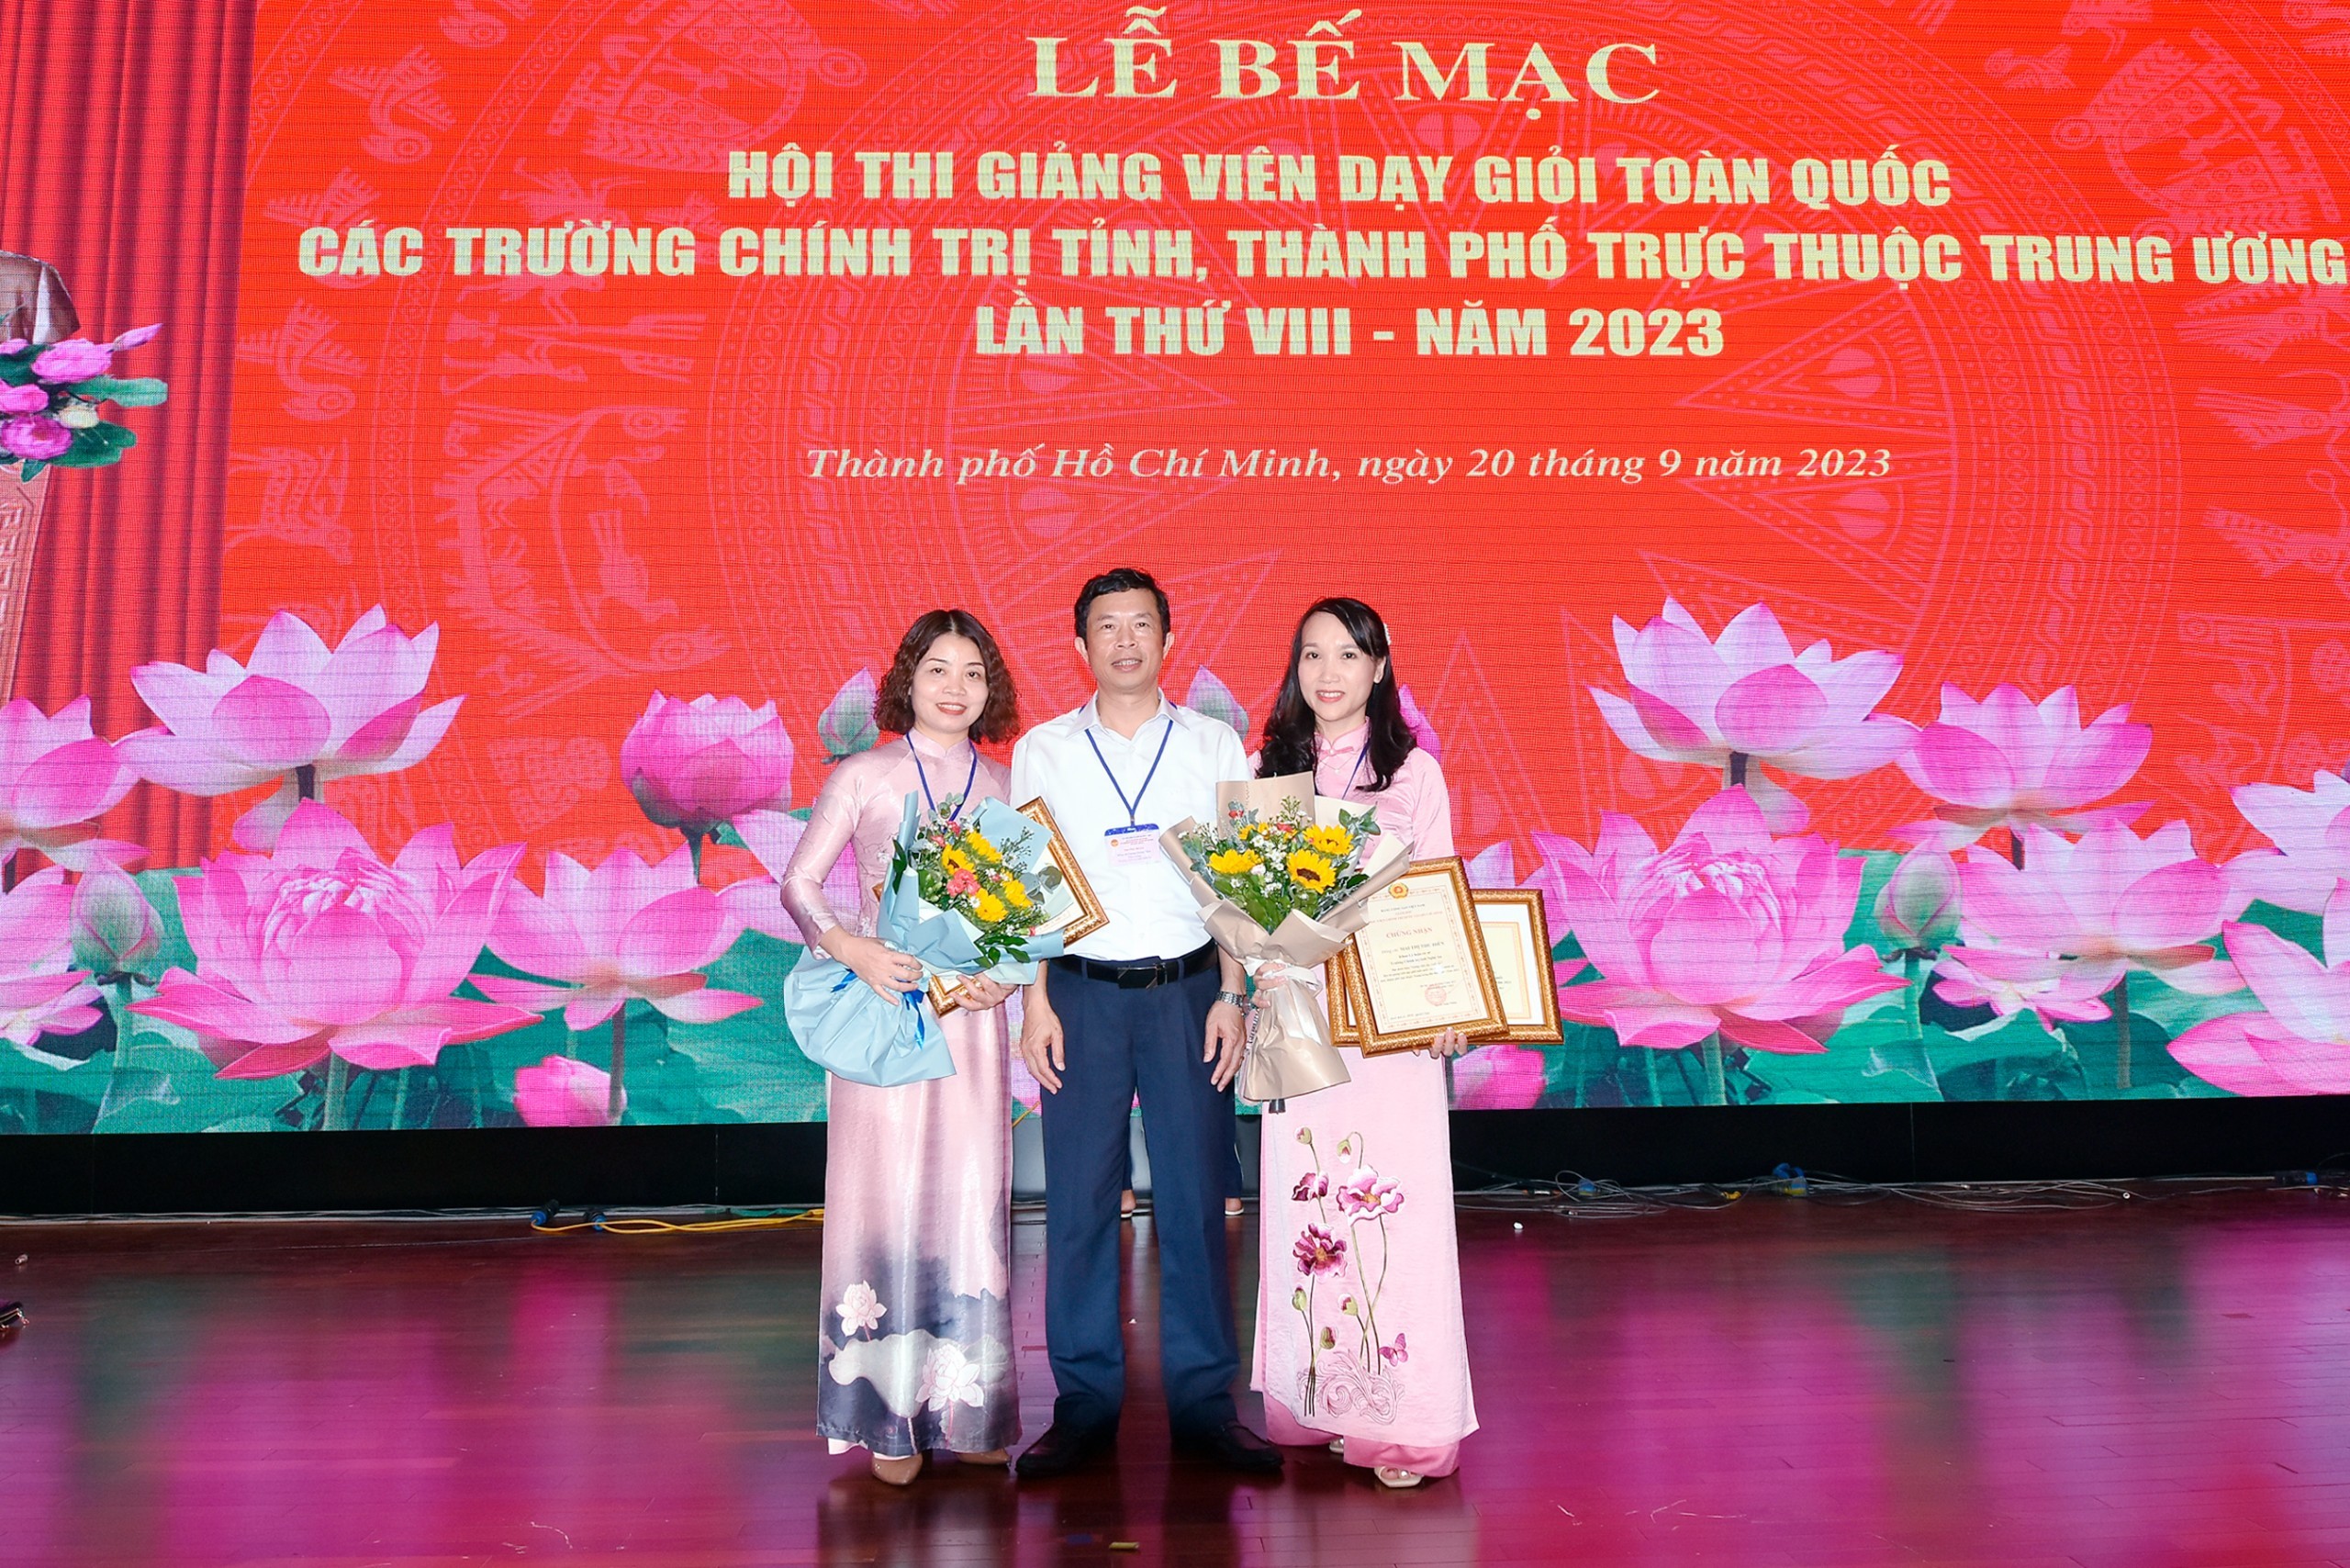 Kết quả tham dự Hội thi Giảng viên dạy giỏi toàn quốc các trường chính trị tỉnh, thành phố trực thuộc Trung ương của Trường Chính trị tỉnh Nghệ An